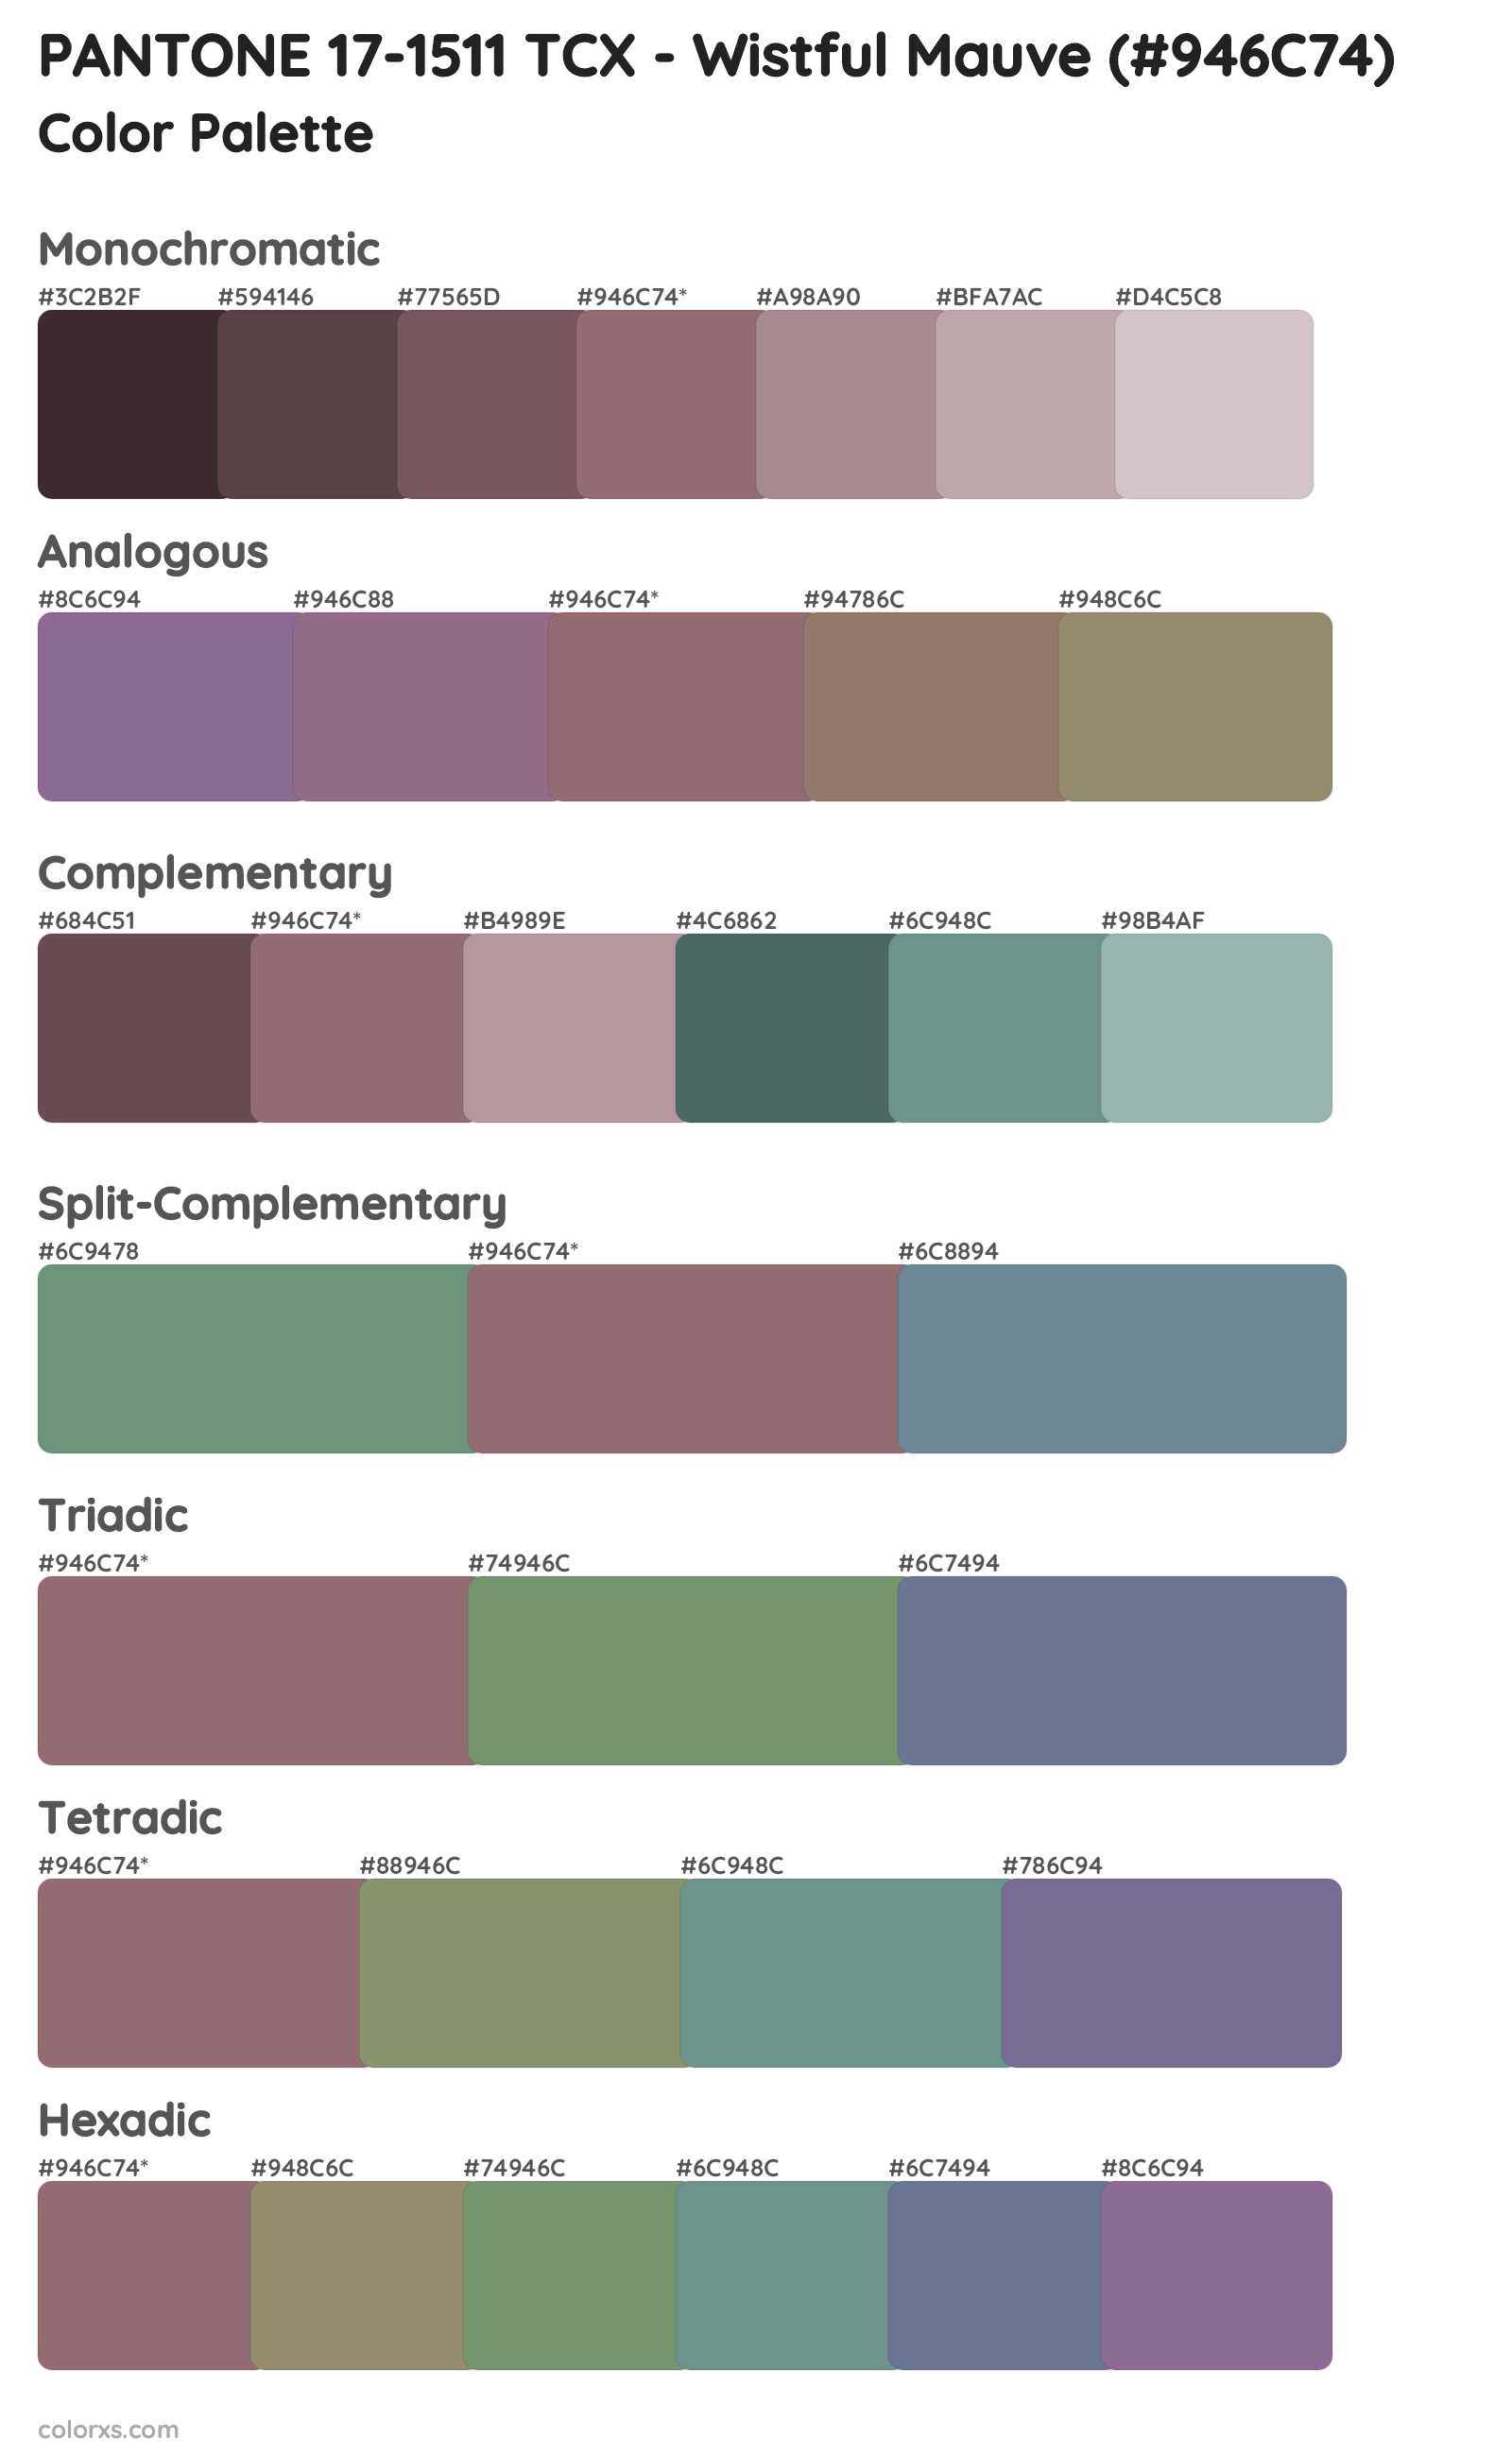 PANTONE 17-1511 TCX - Wistful Mauve Color Scheme Palettes